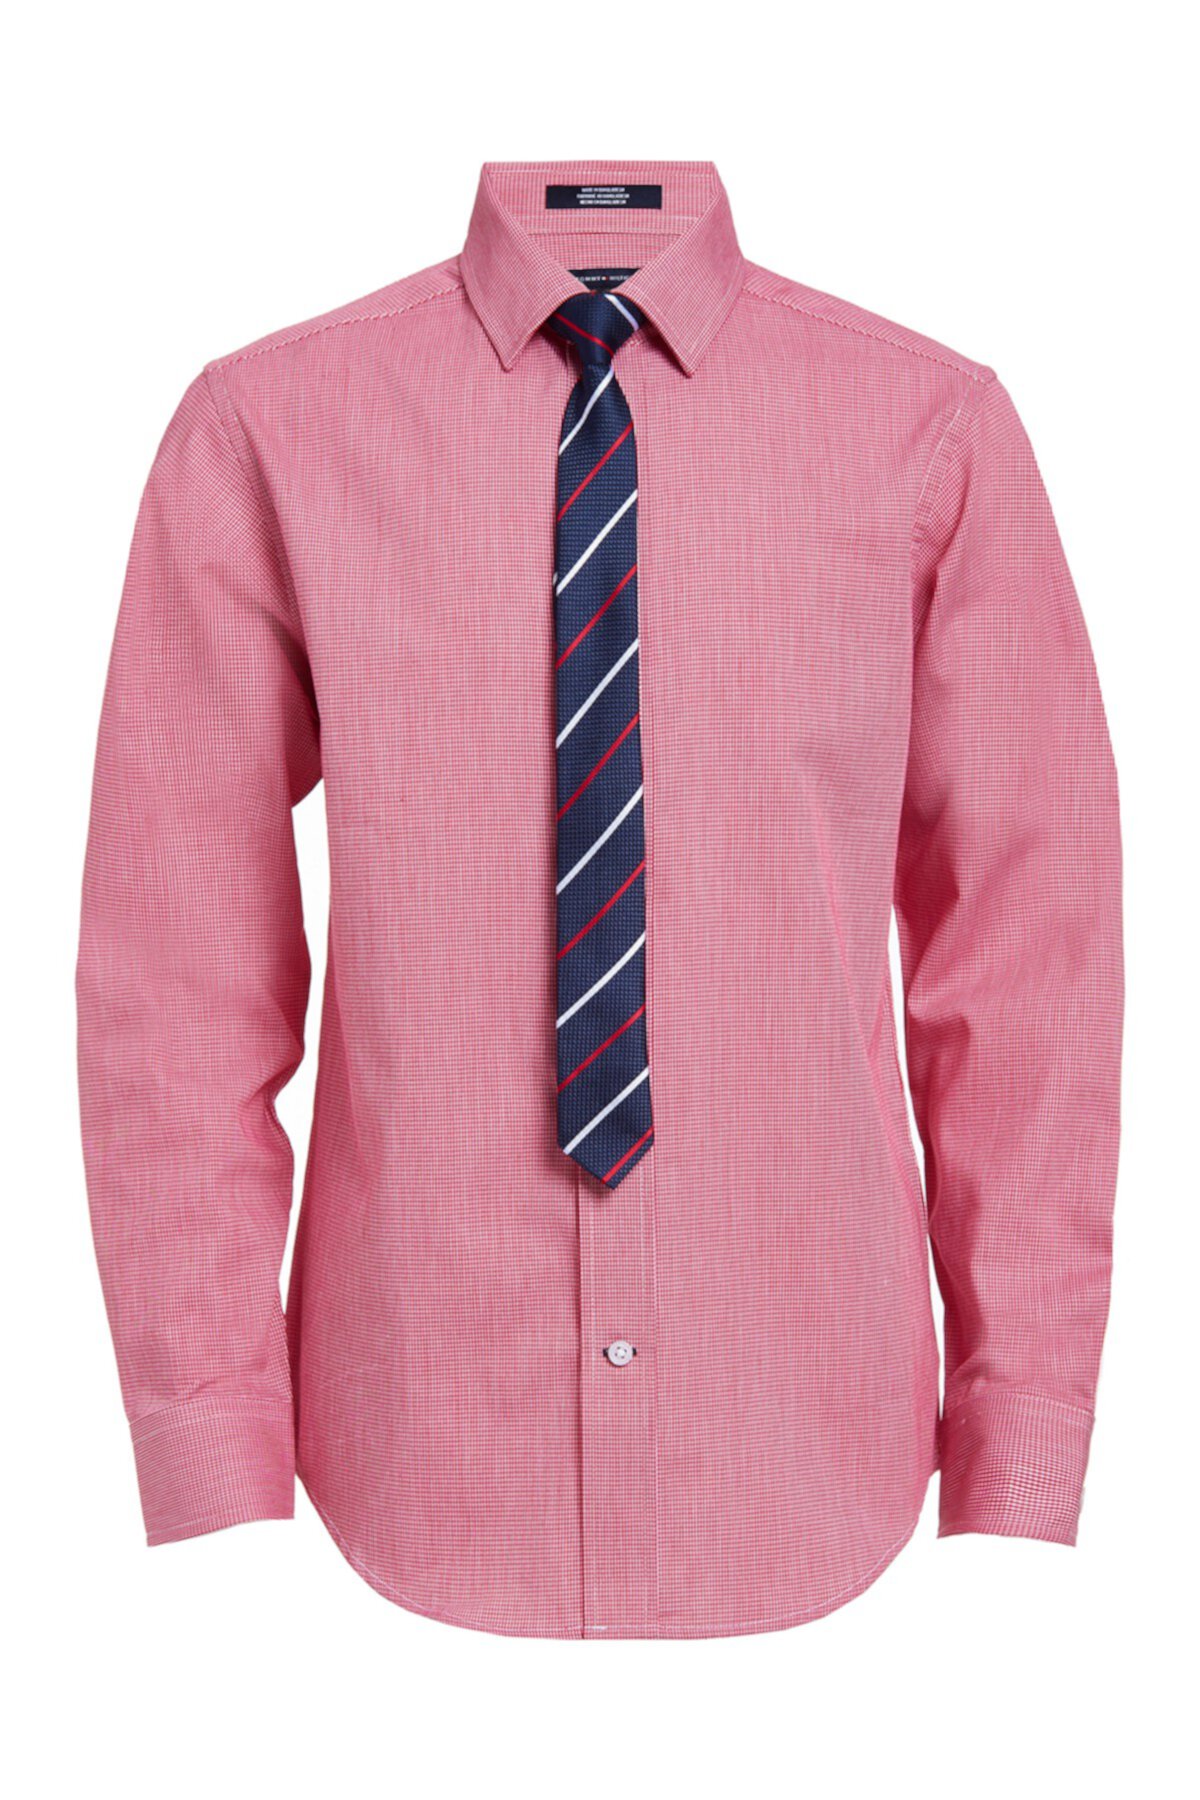 Миниатюрная рубашка и галстук с узором гусиные лапки (для больших мальчиков) Tommy Hilfiger